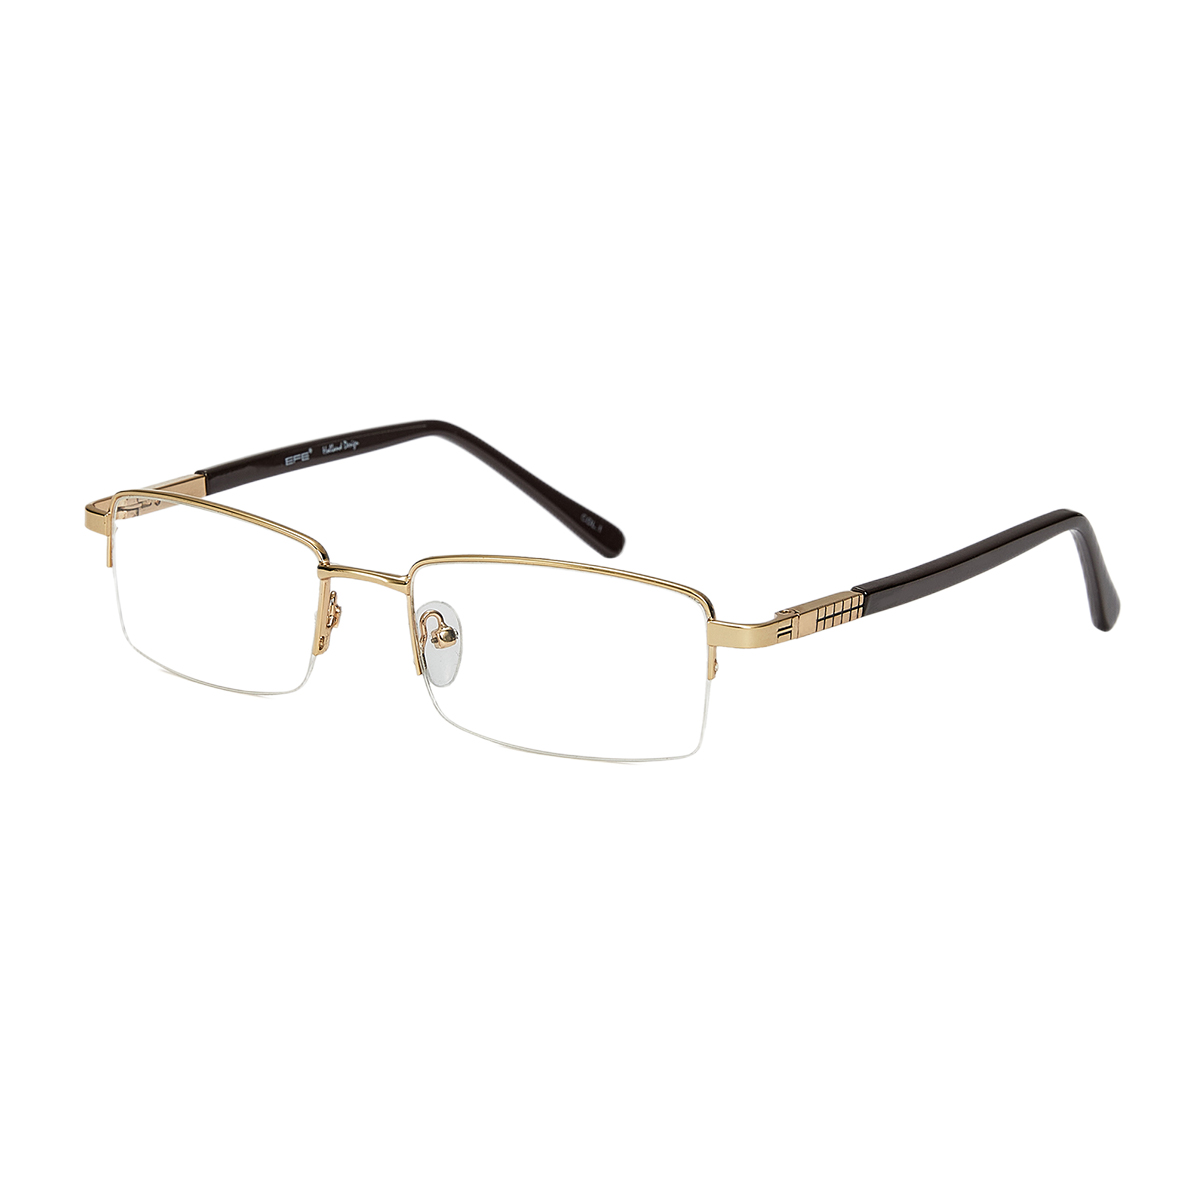 Moeotis - Rectangle Gold Reading Glasses for Men